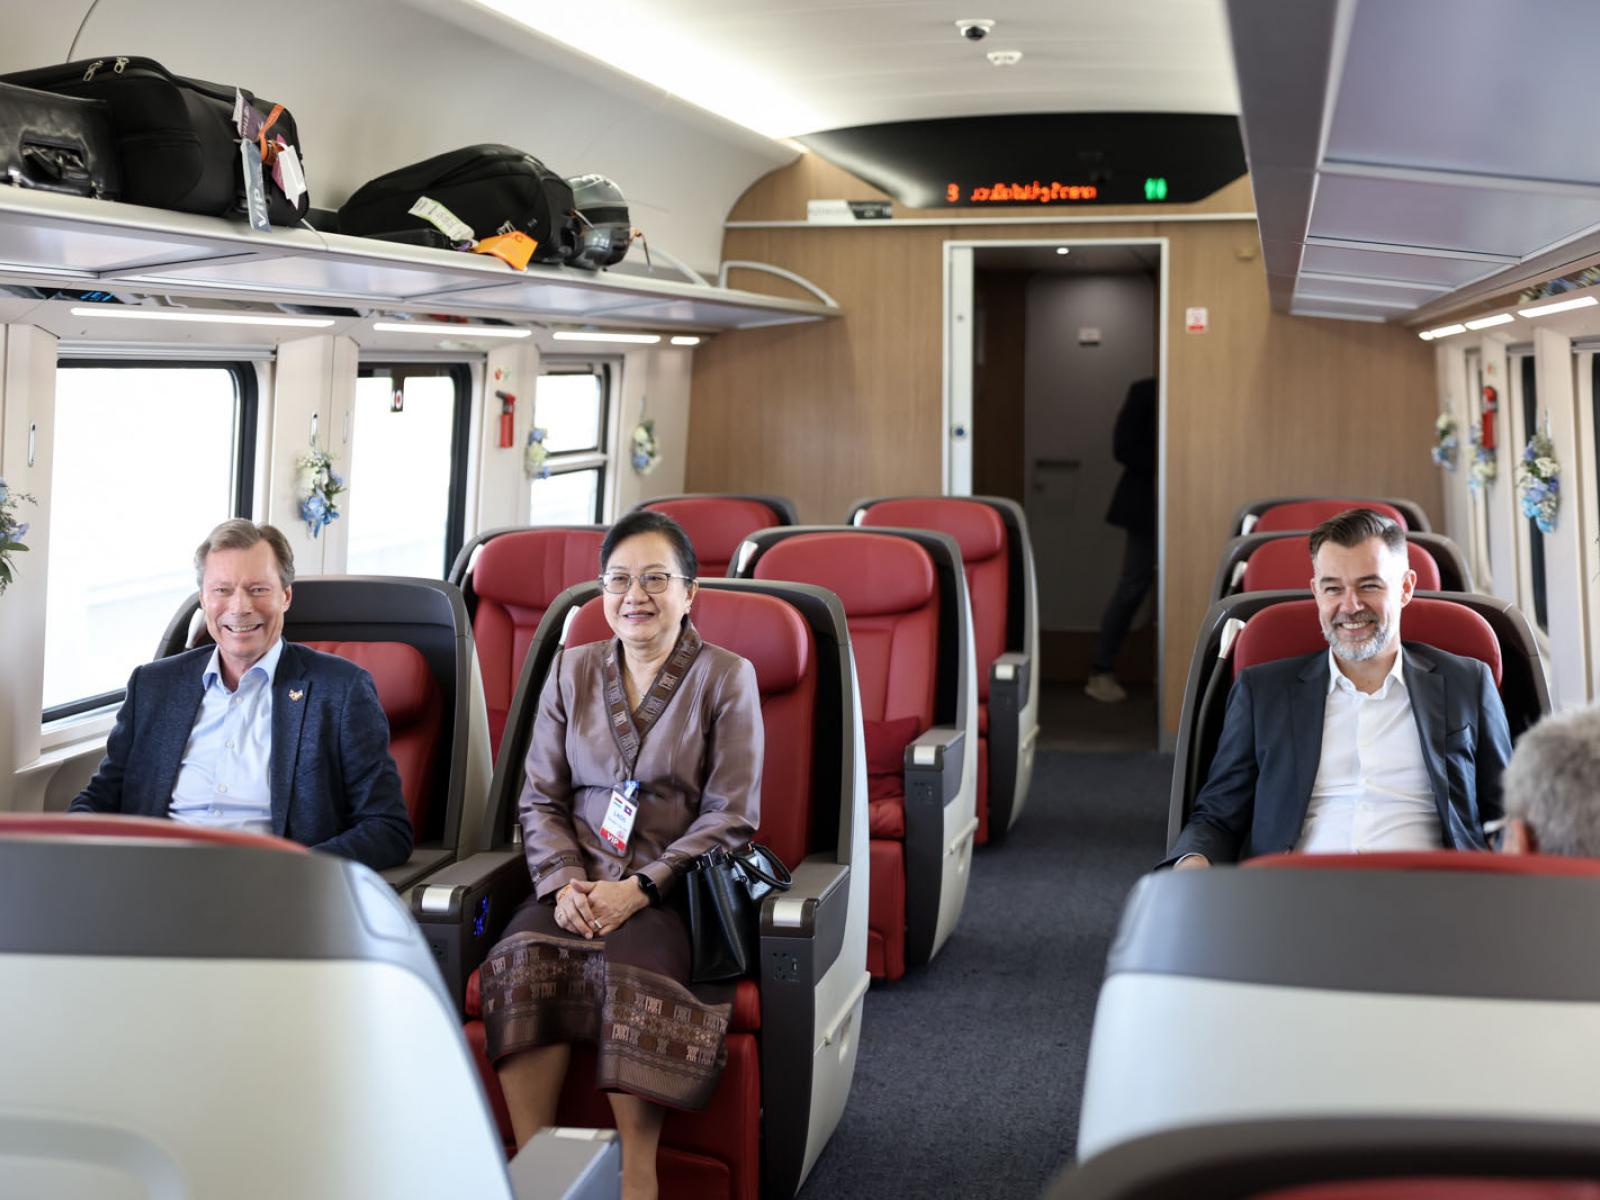 Le Grand-Duc et le Ministre dans le train pour Luang Prabang